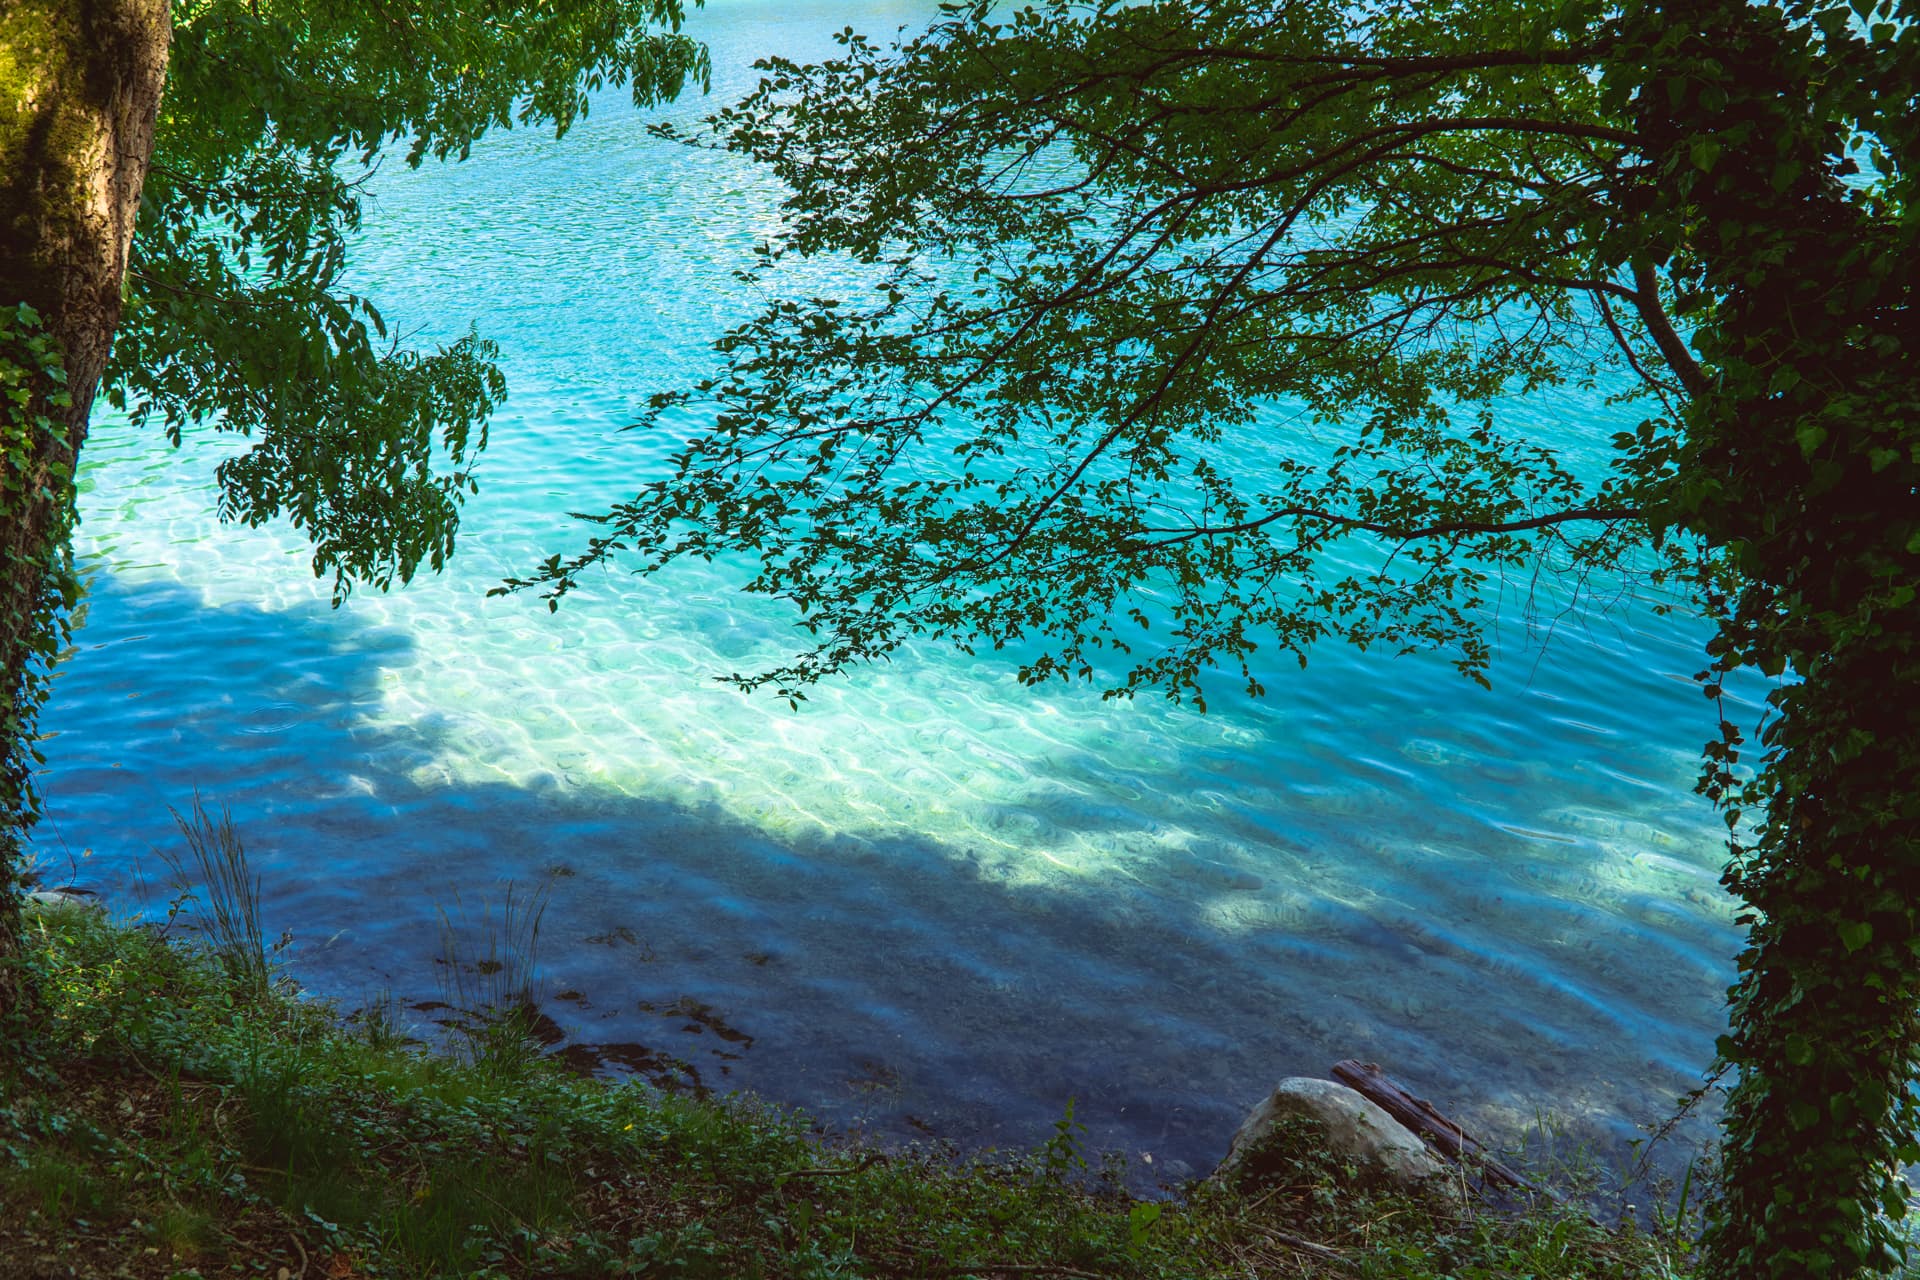 Kolor wody w Jeziorze Ledro | Jezioro Garda informacje praktyczne